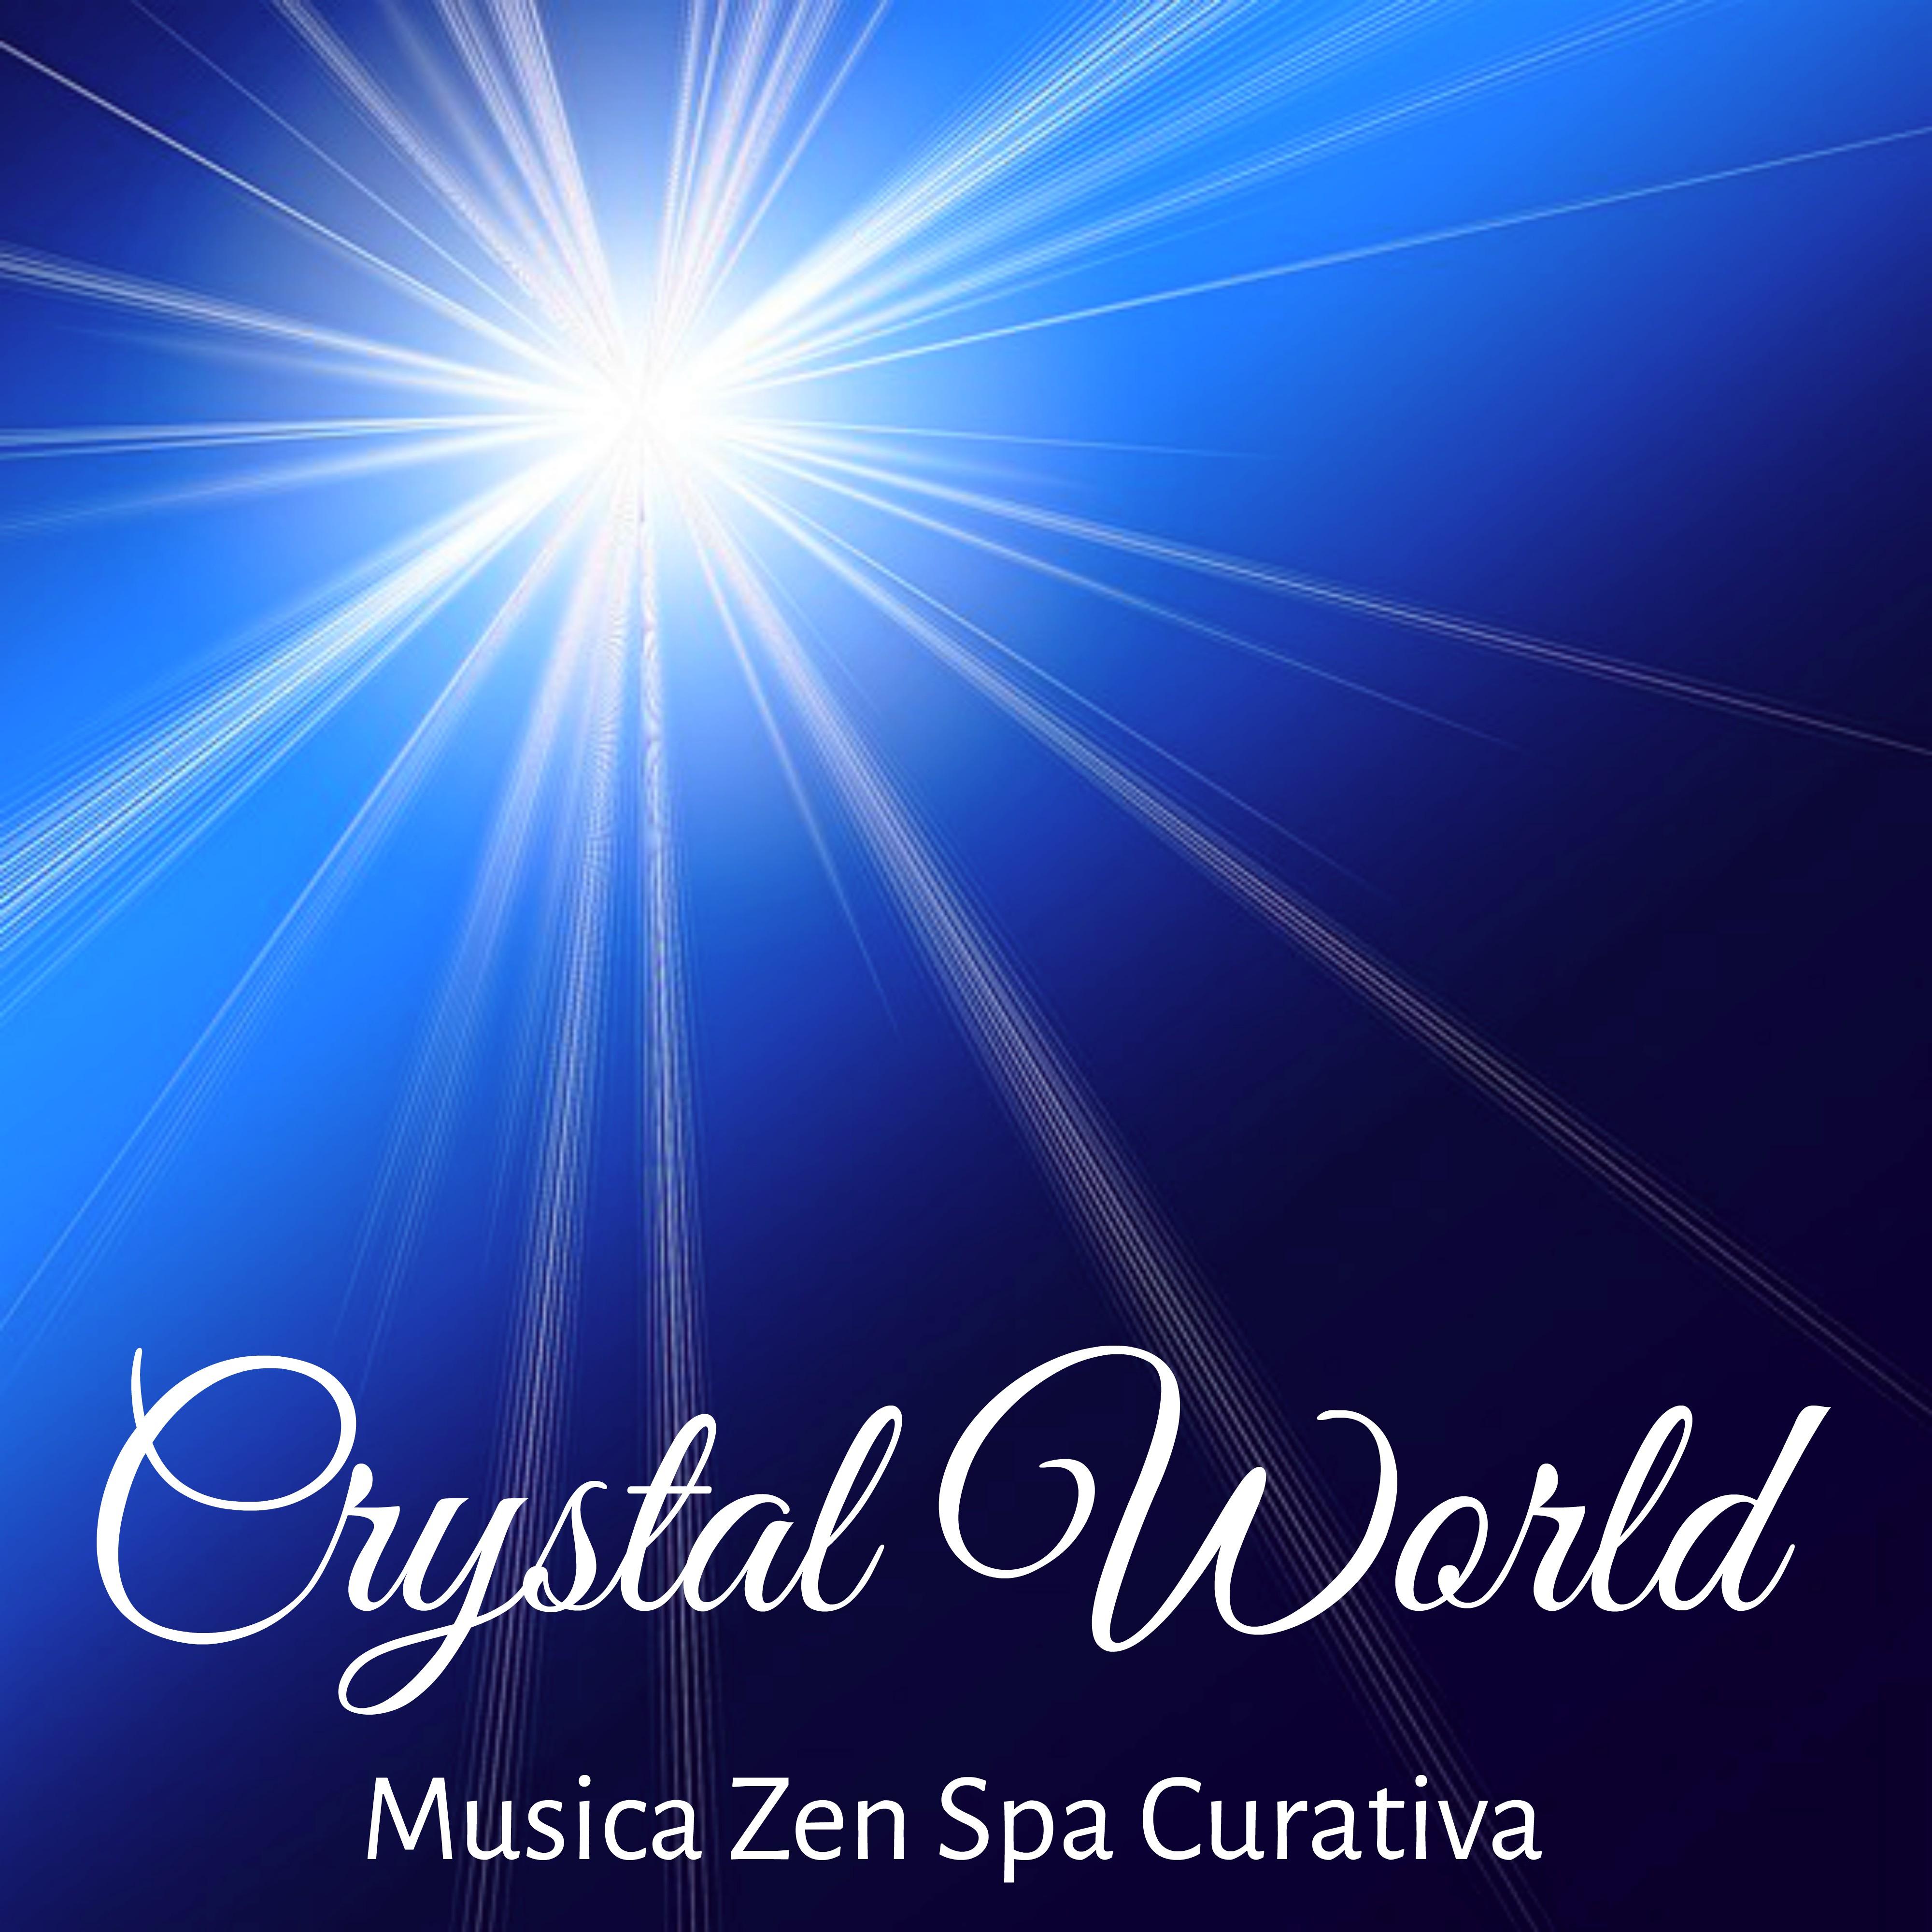 Crystal World - Musica Zen Spa Curativa per Potere della Mente Massaggi Benessere con Suoni Dolci Meditativi New Age e Strumentali